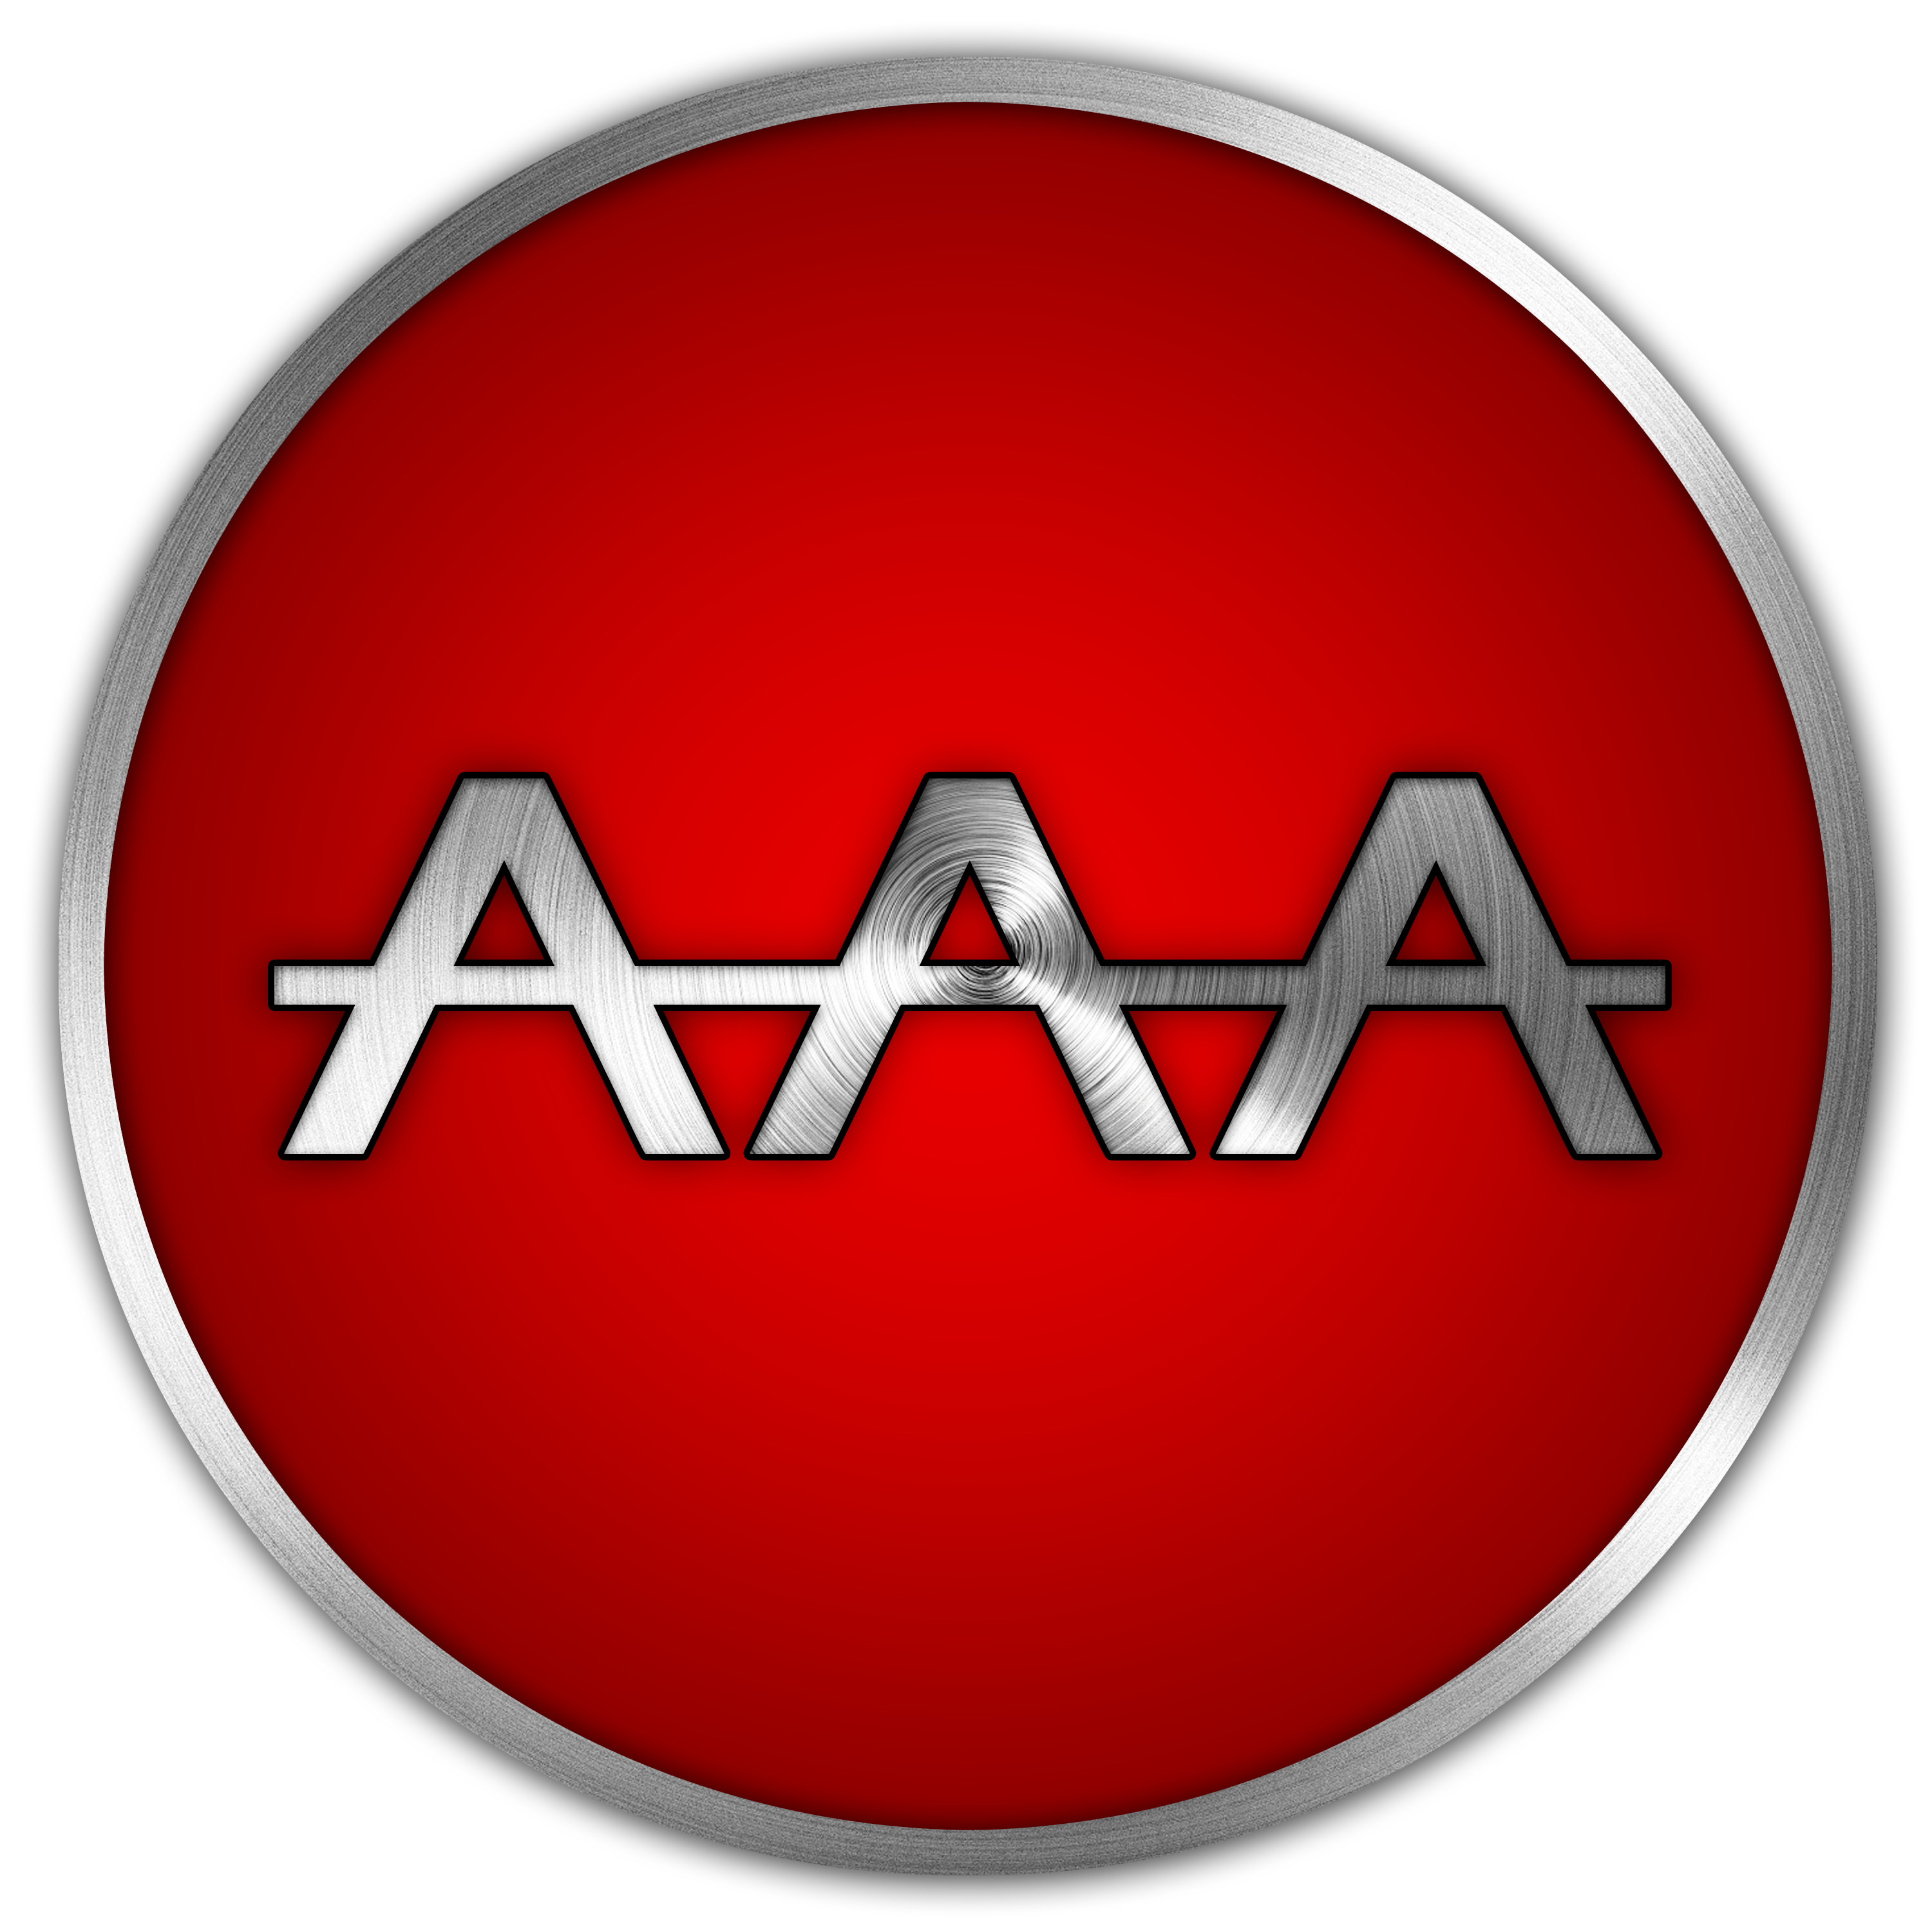 AAA Logo by ExpertDesignz on DeviantArt